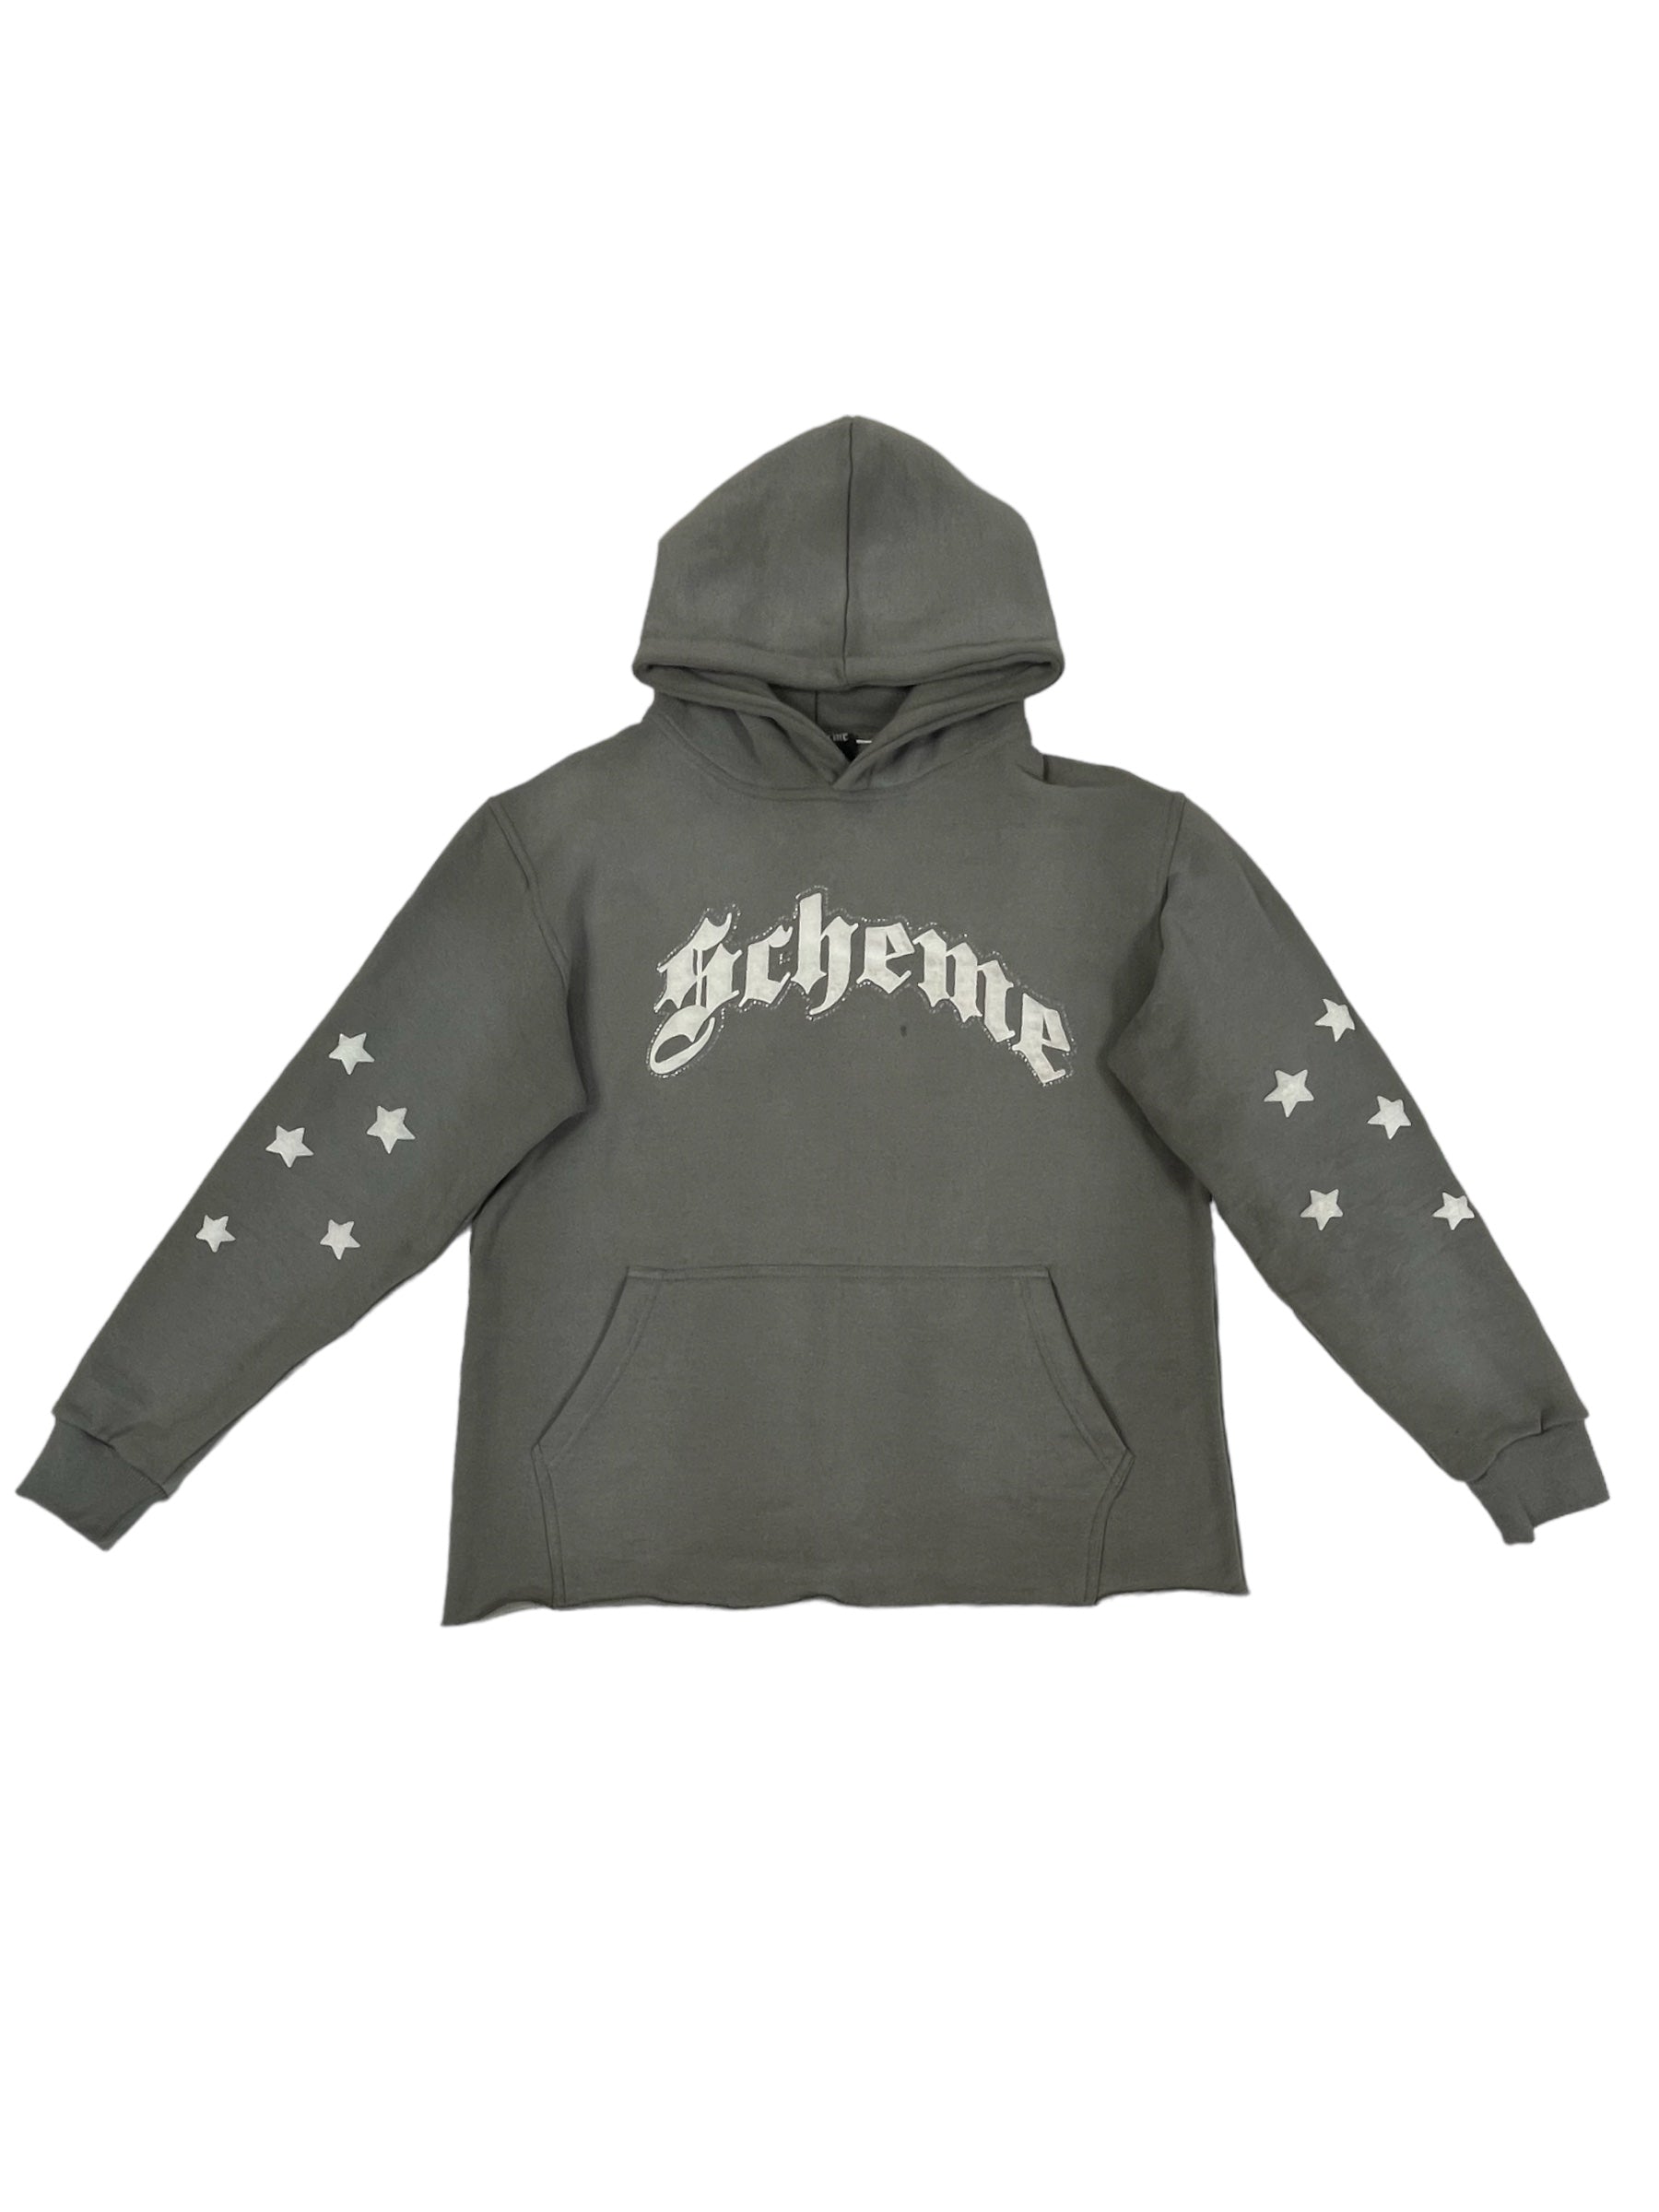 "Scheme" Rhinestone Star Puff - Charcoal Gray Hoodie - Scheme Wear